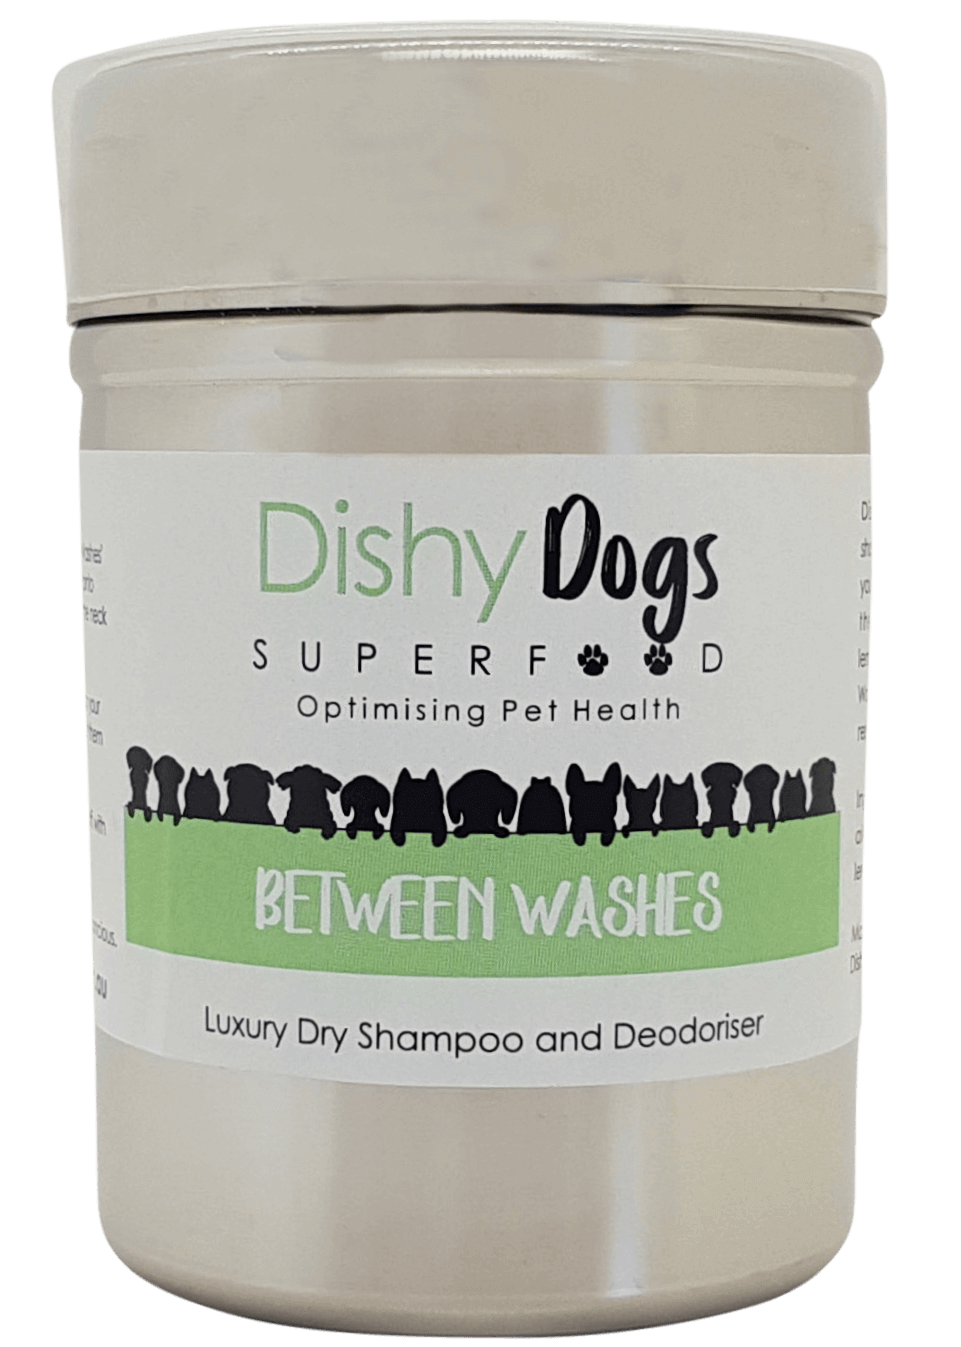 Deodoriser for Dogs, Dry Shampoo for dogs, flea control for dogs, tick control for dogs, Dishy Dogs Dry Shampoo